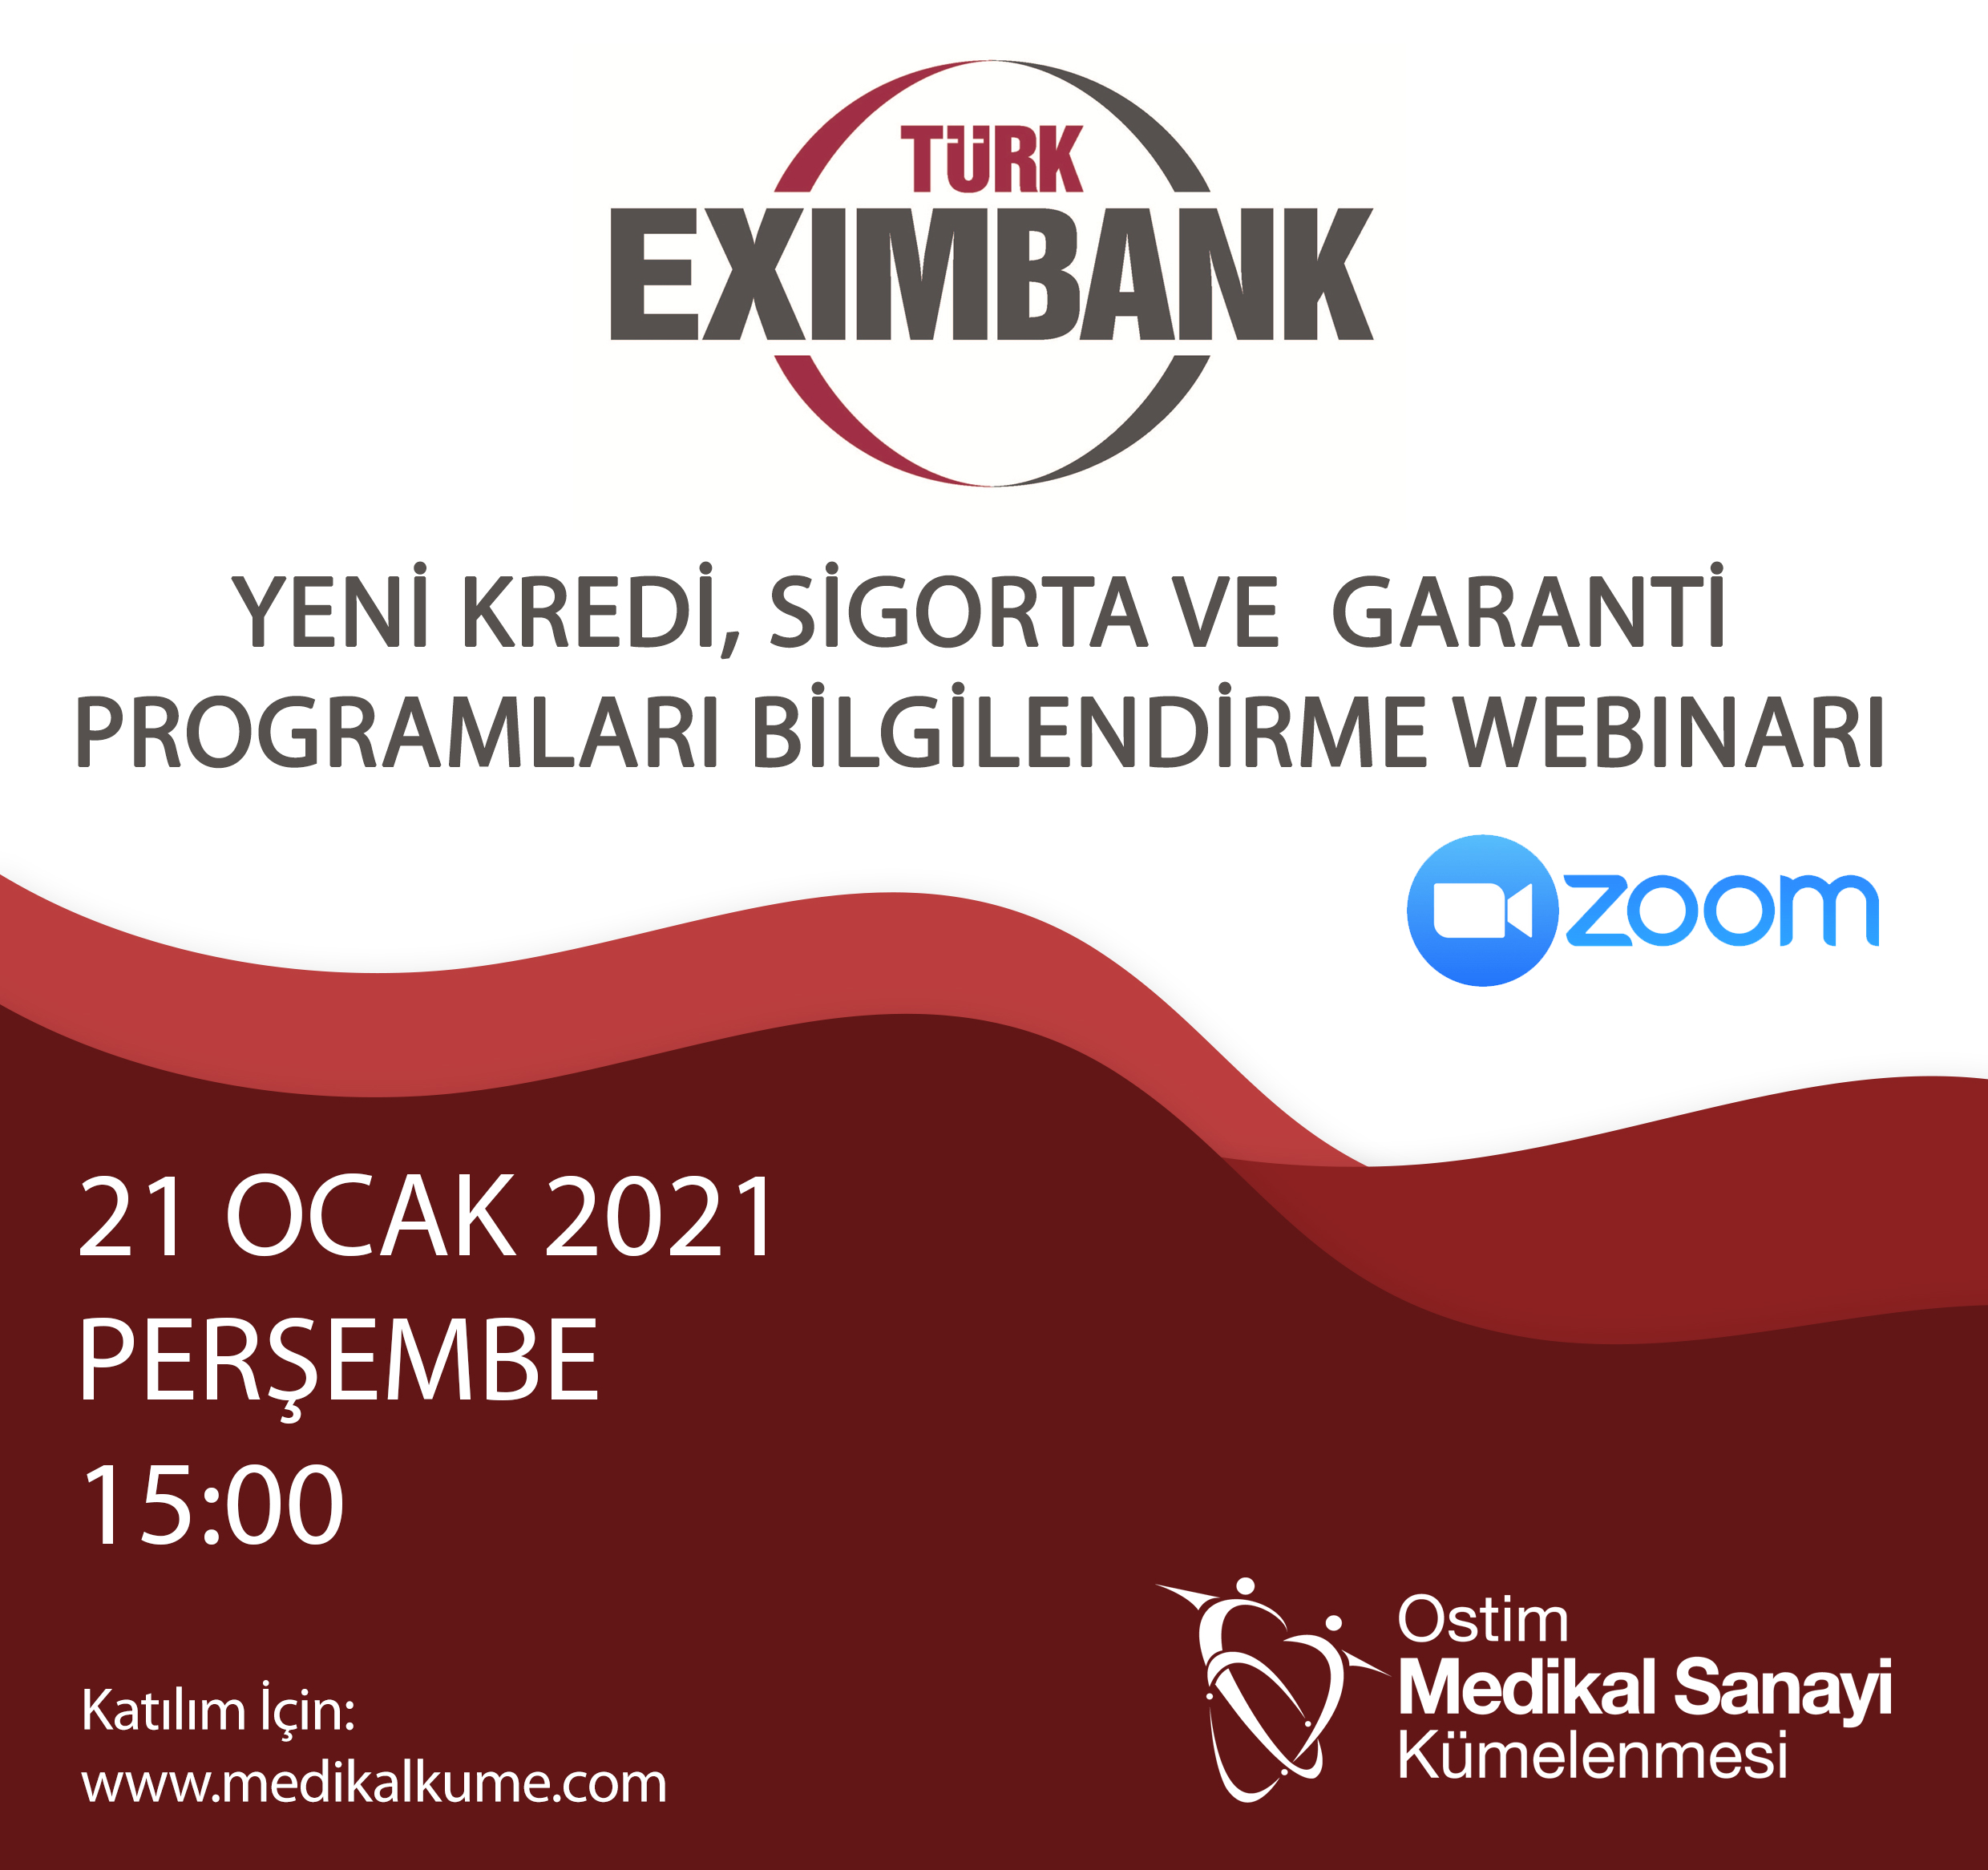 Türk Eximbank ile Yeni Kredi, Sigorta ve Garanti Programları Hakkında Bilgilendirme Webinarı 